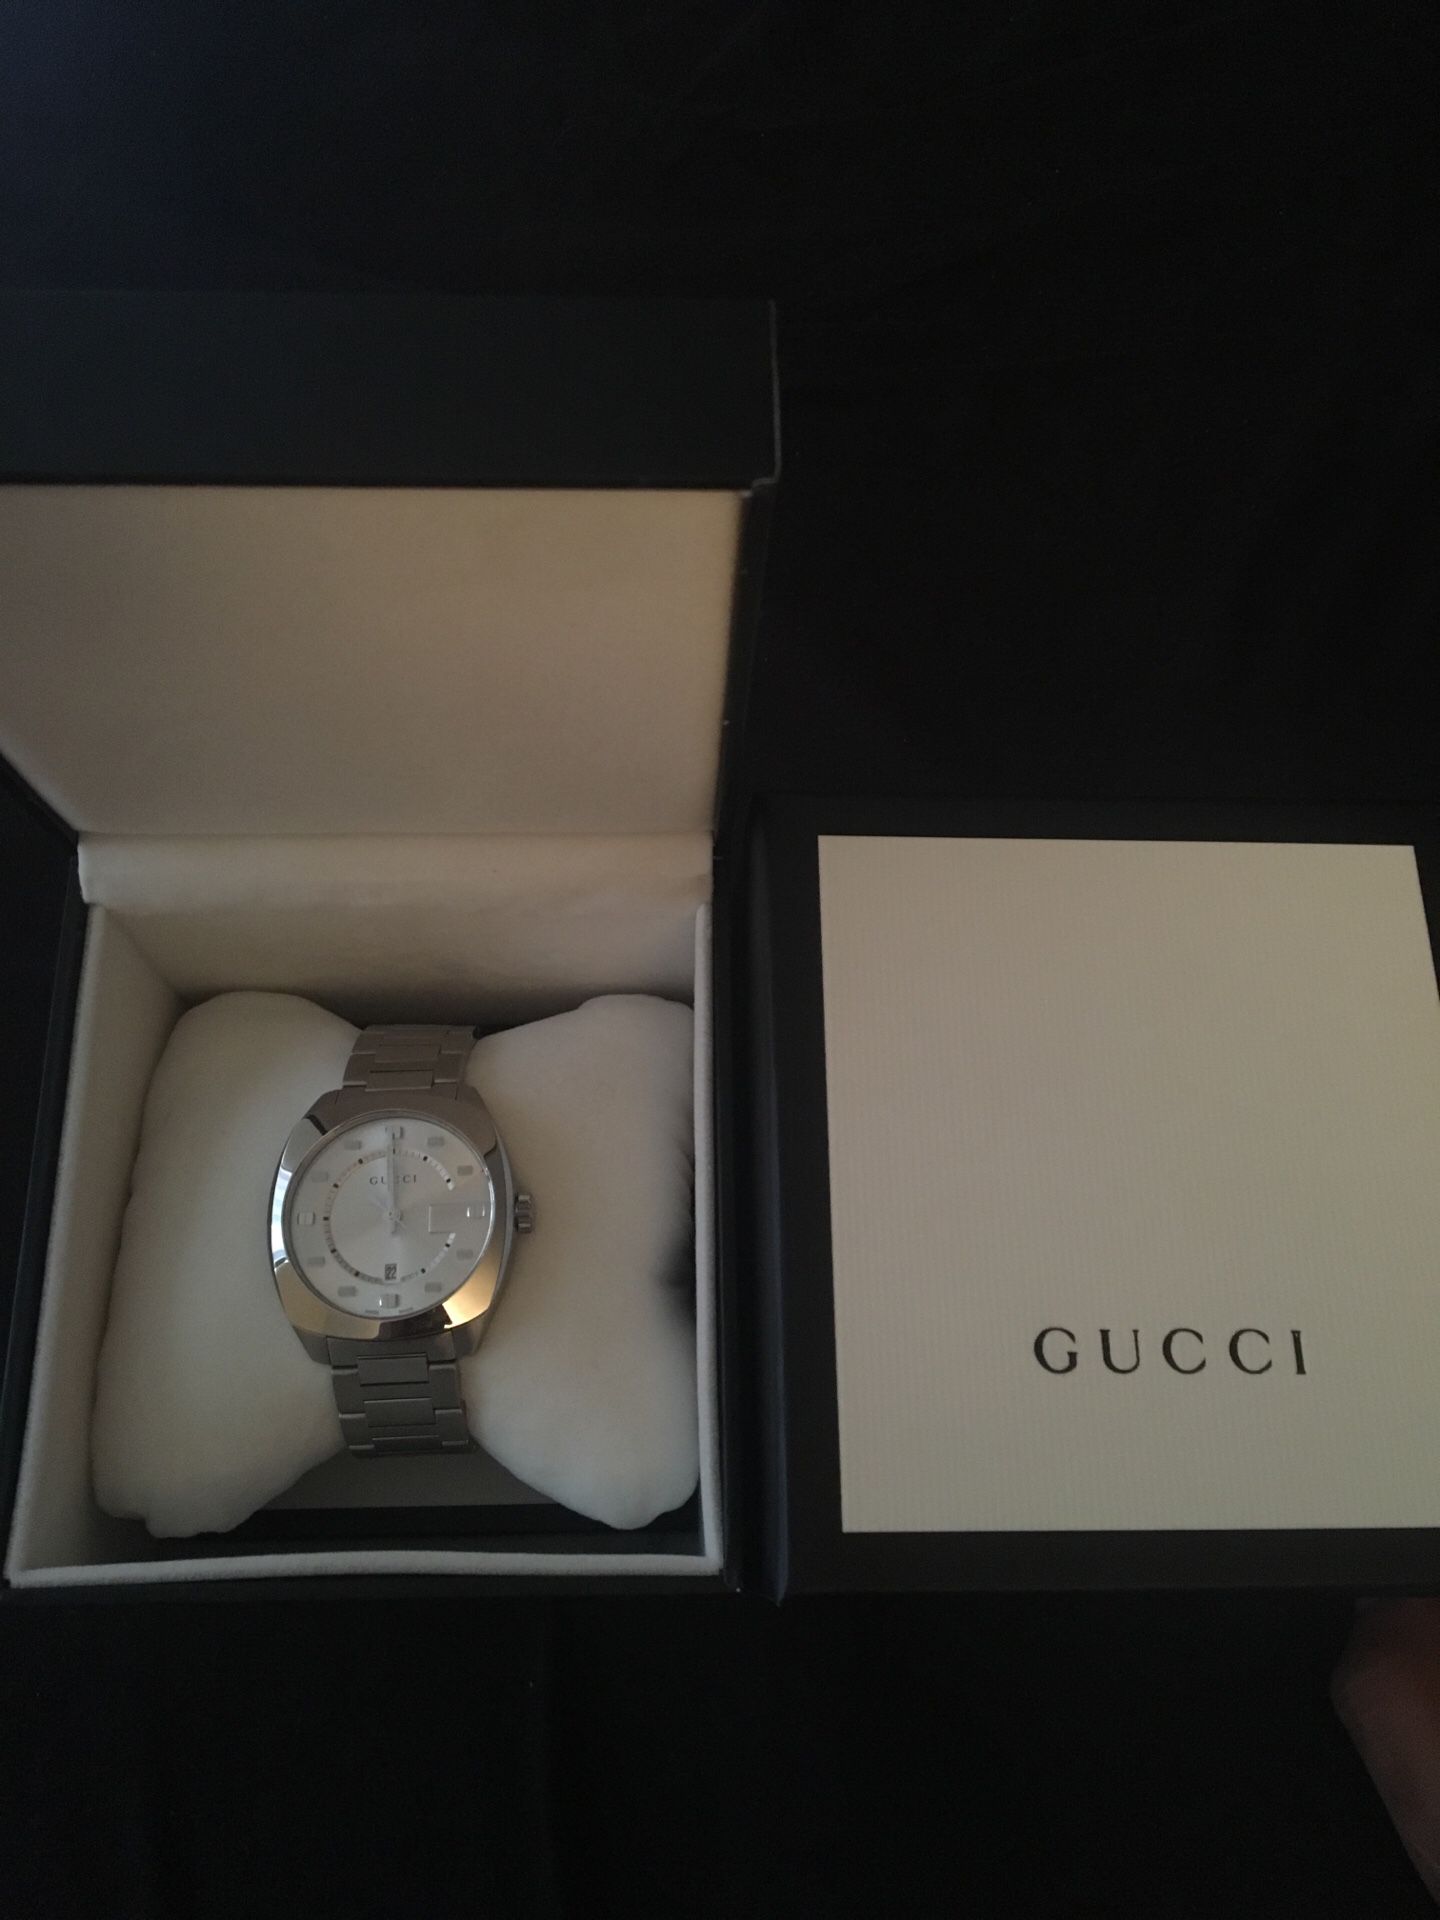 Gucci men’s bracelet watch